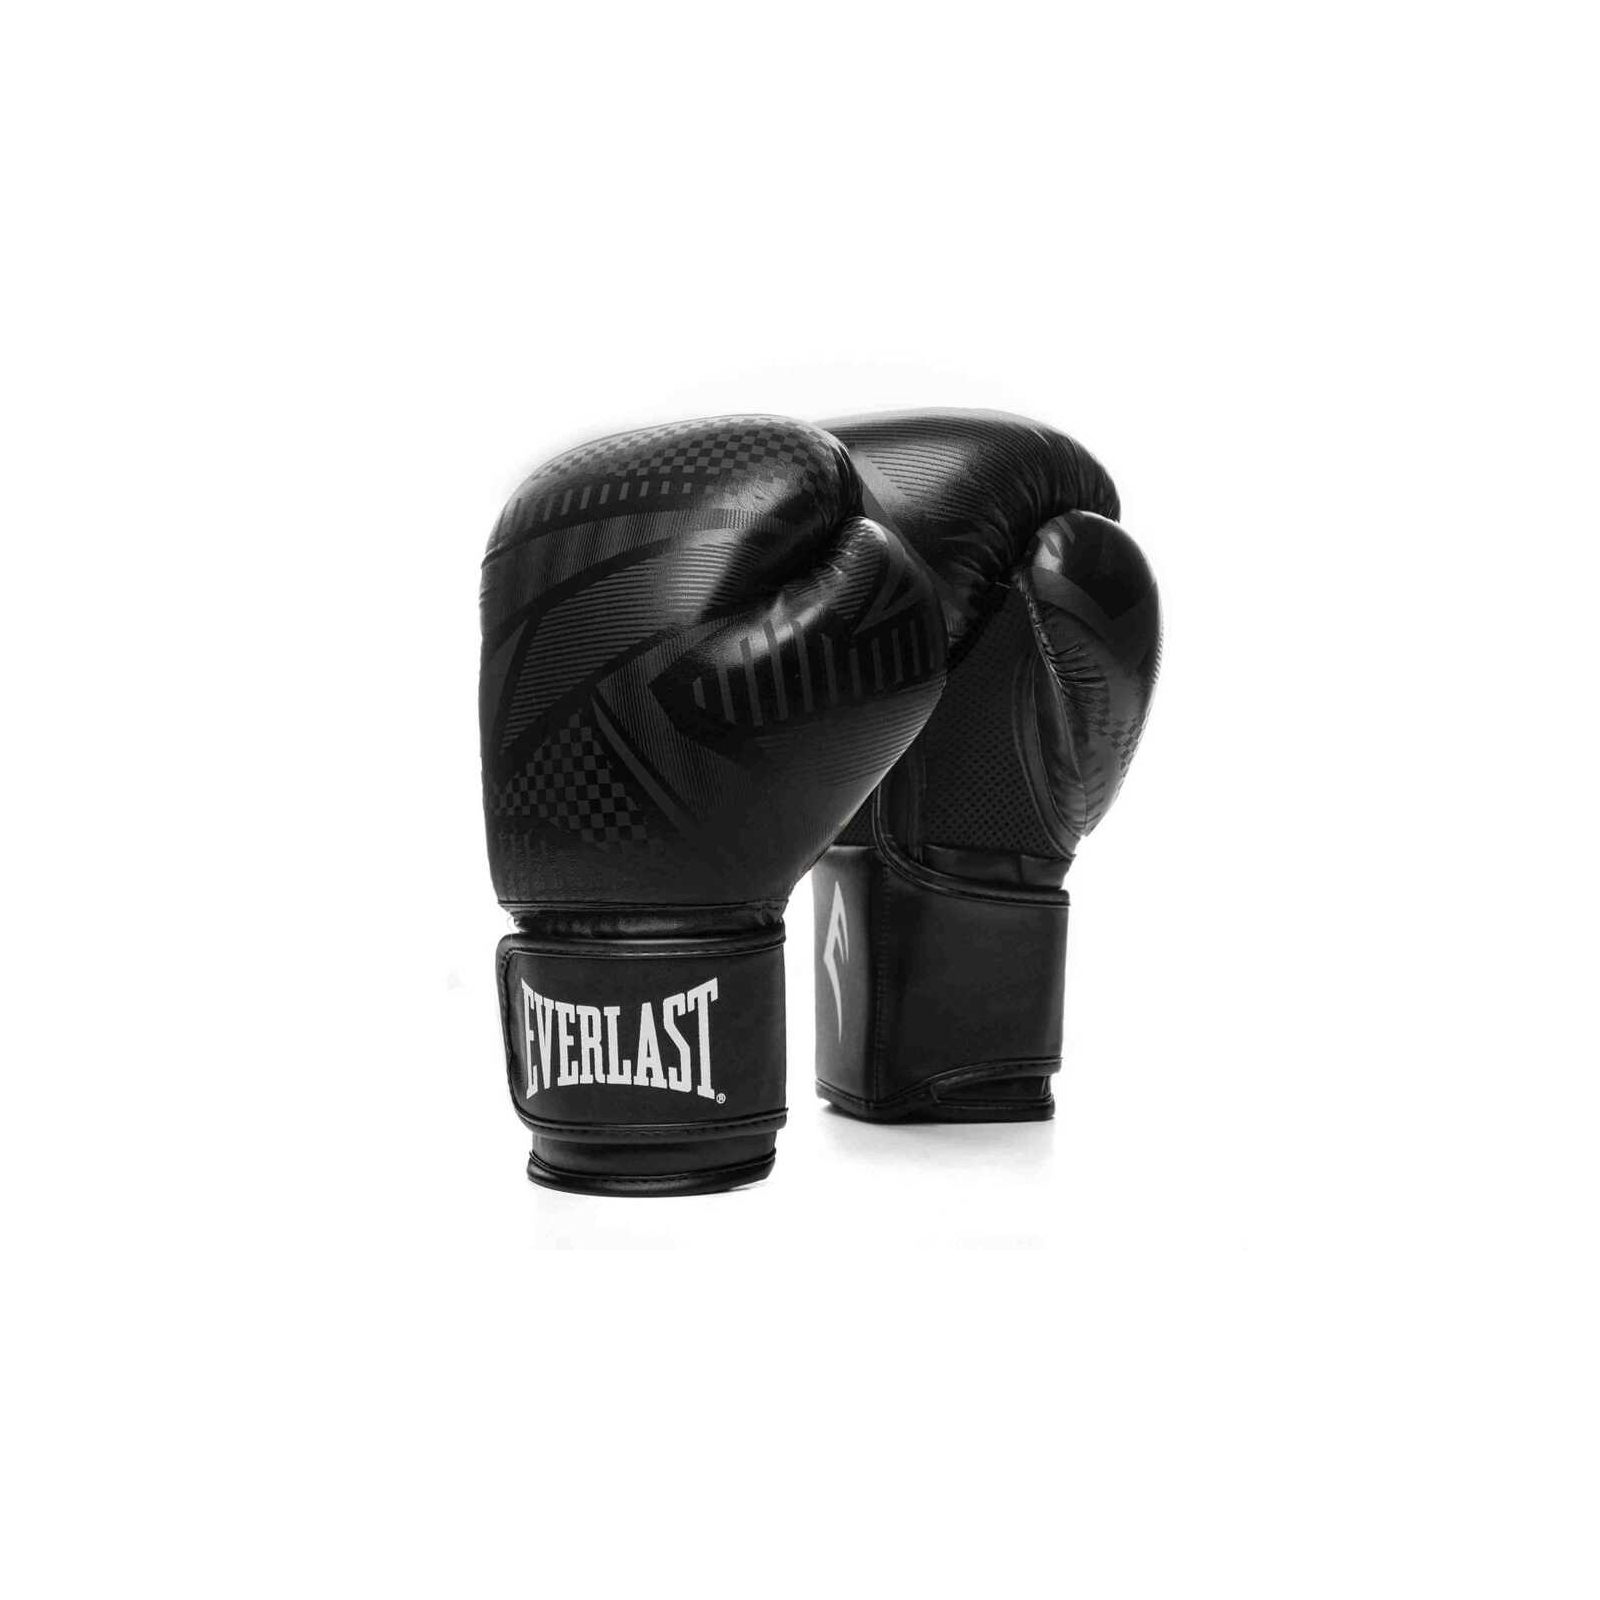 Боксерские перчатки Everlast Spark Training Gloves 870930-70-816 чорний 16 oz (009283609450)